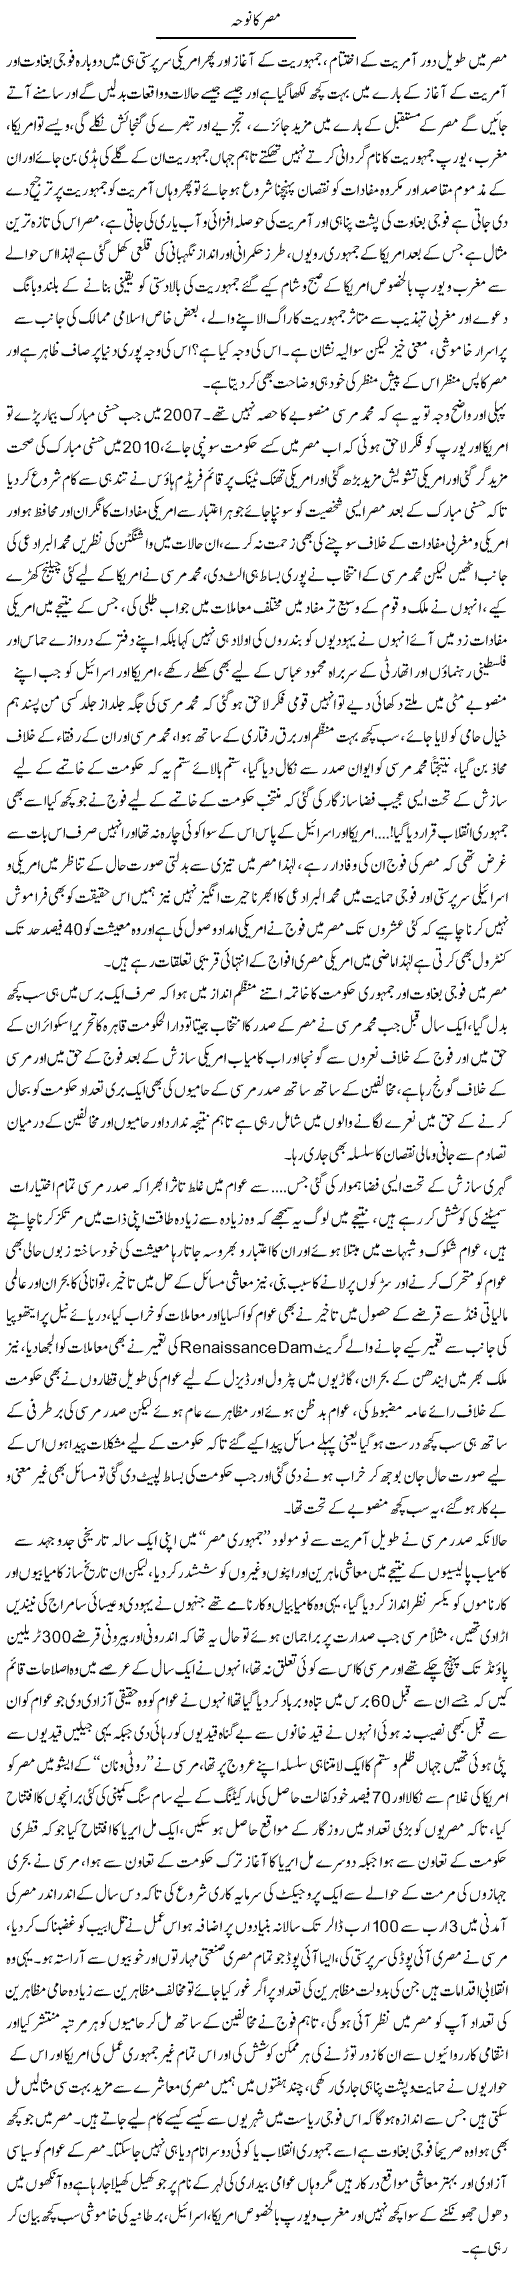 Misar Ka Noha | Dr. Muhammad Tayyab Khan Singhanvi | Daily Urdu Columns